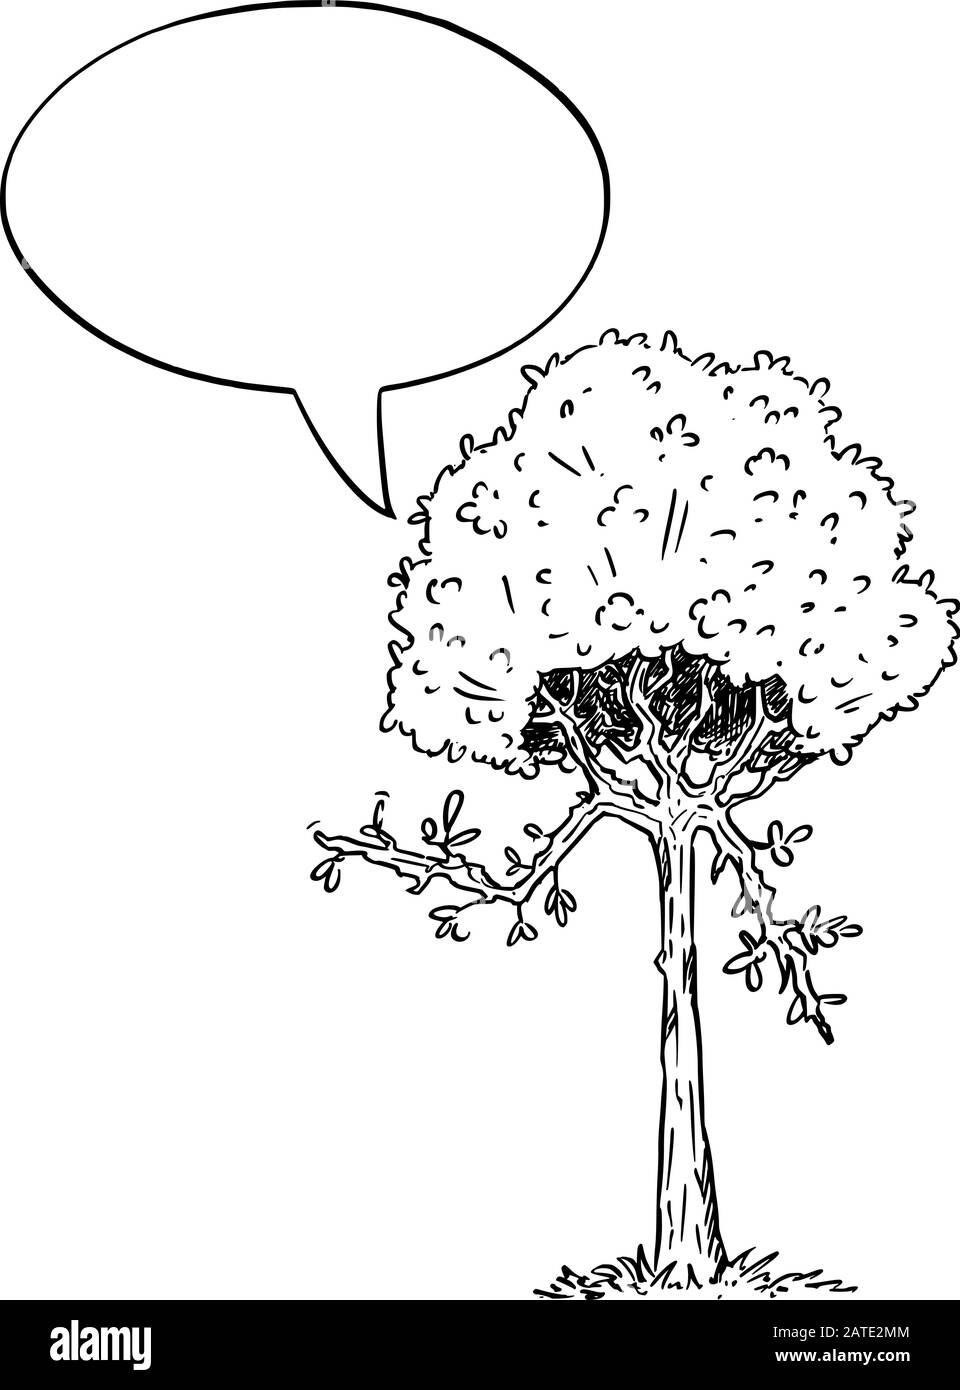 Vektorgrafiken von Cartoon-Blumenstraum-Pflanzen-Charakter mit Sprechblase. Ökologie oder Naturwerbung oder Marketingdesign. Stock Vektor